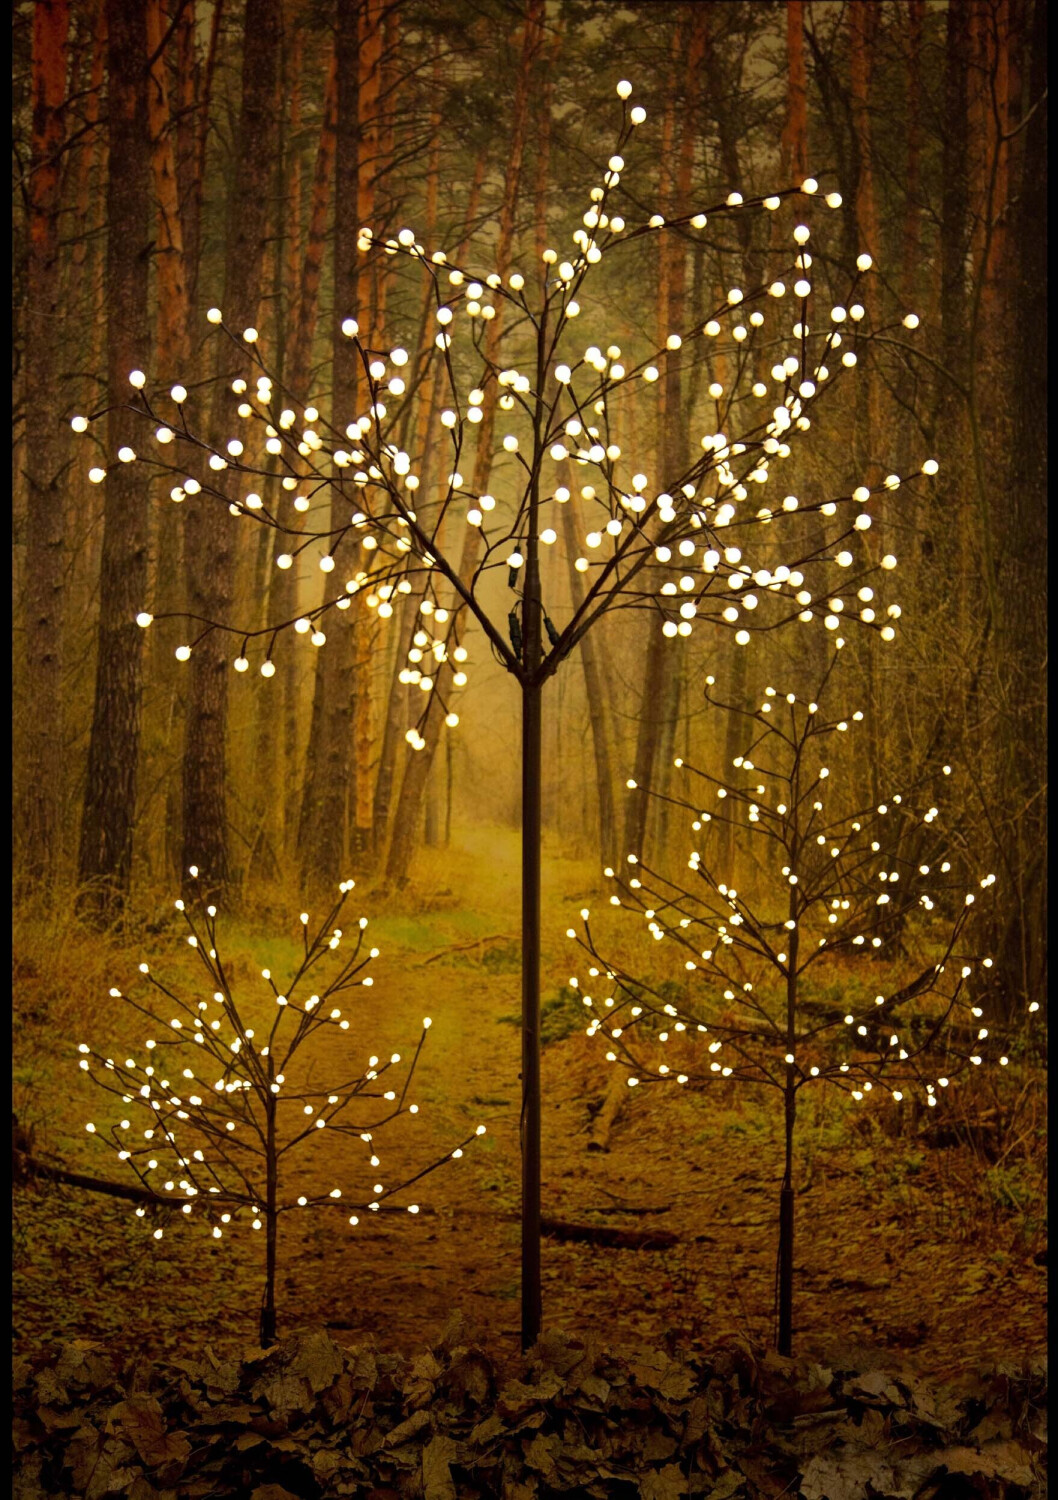 KONSTSMIDE LED-Lichterbaum Glimmer schwarz 210 cm, 504 LED bernsteinfarben,  Glimmereffekt